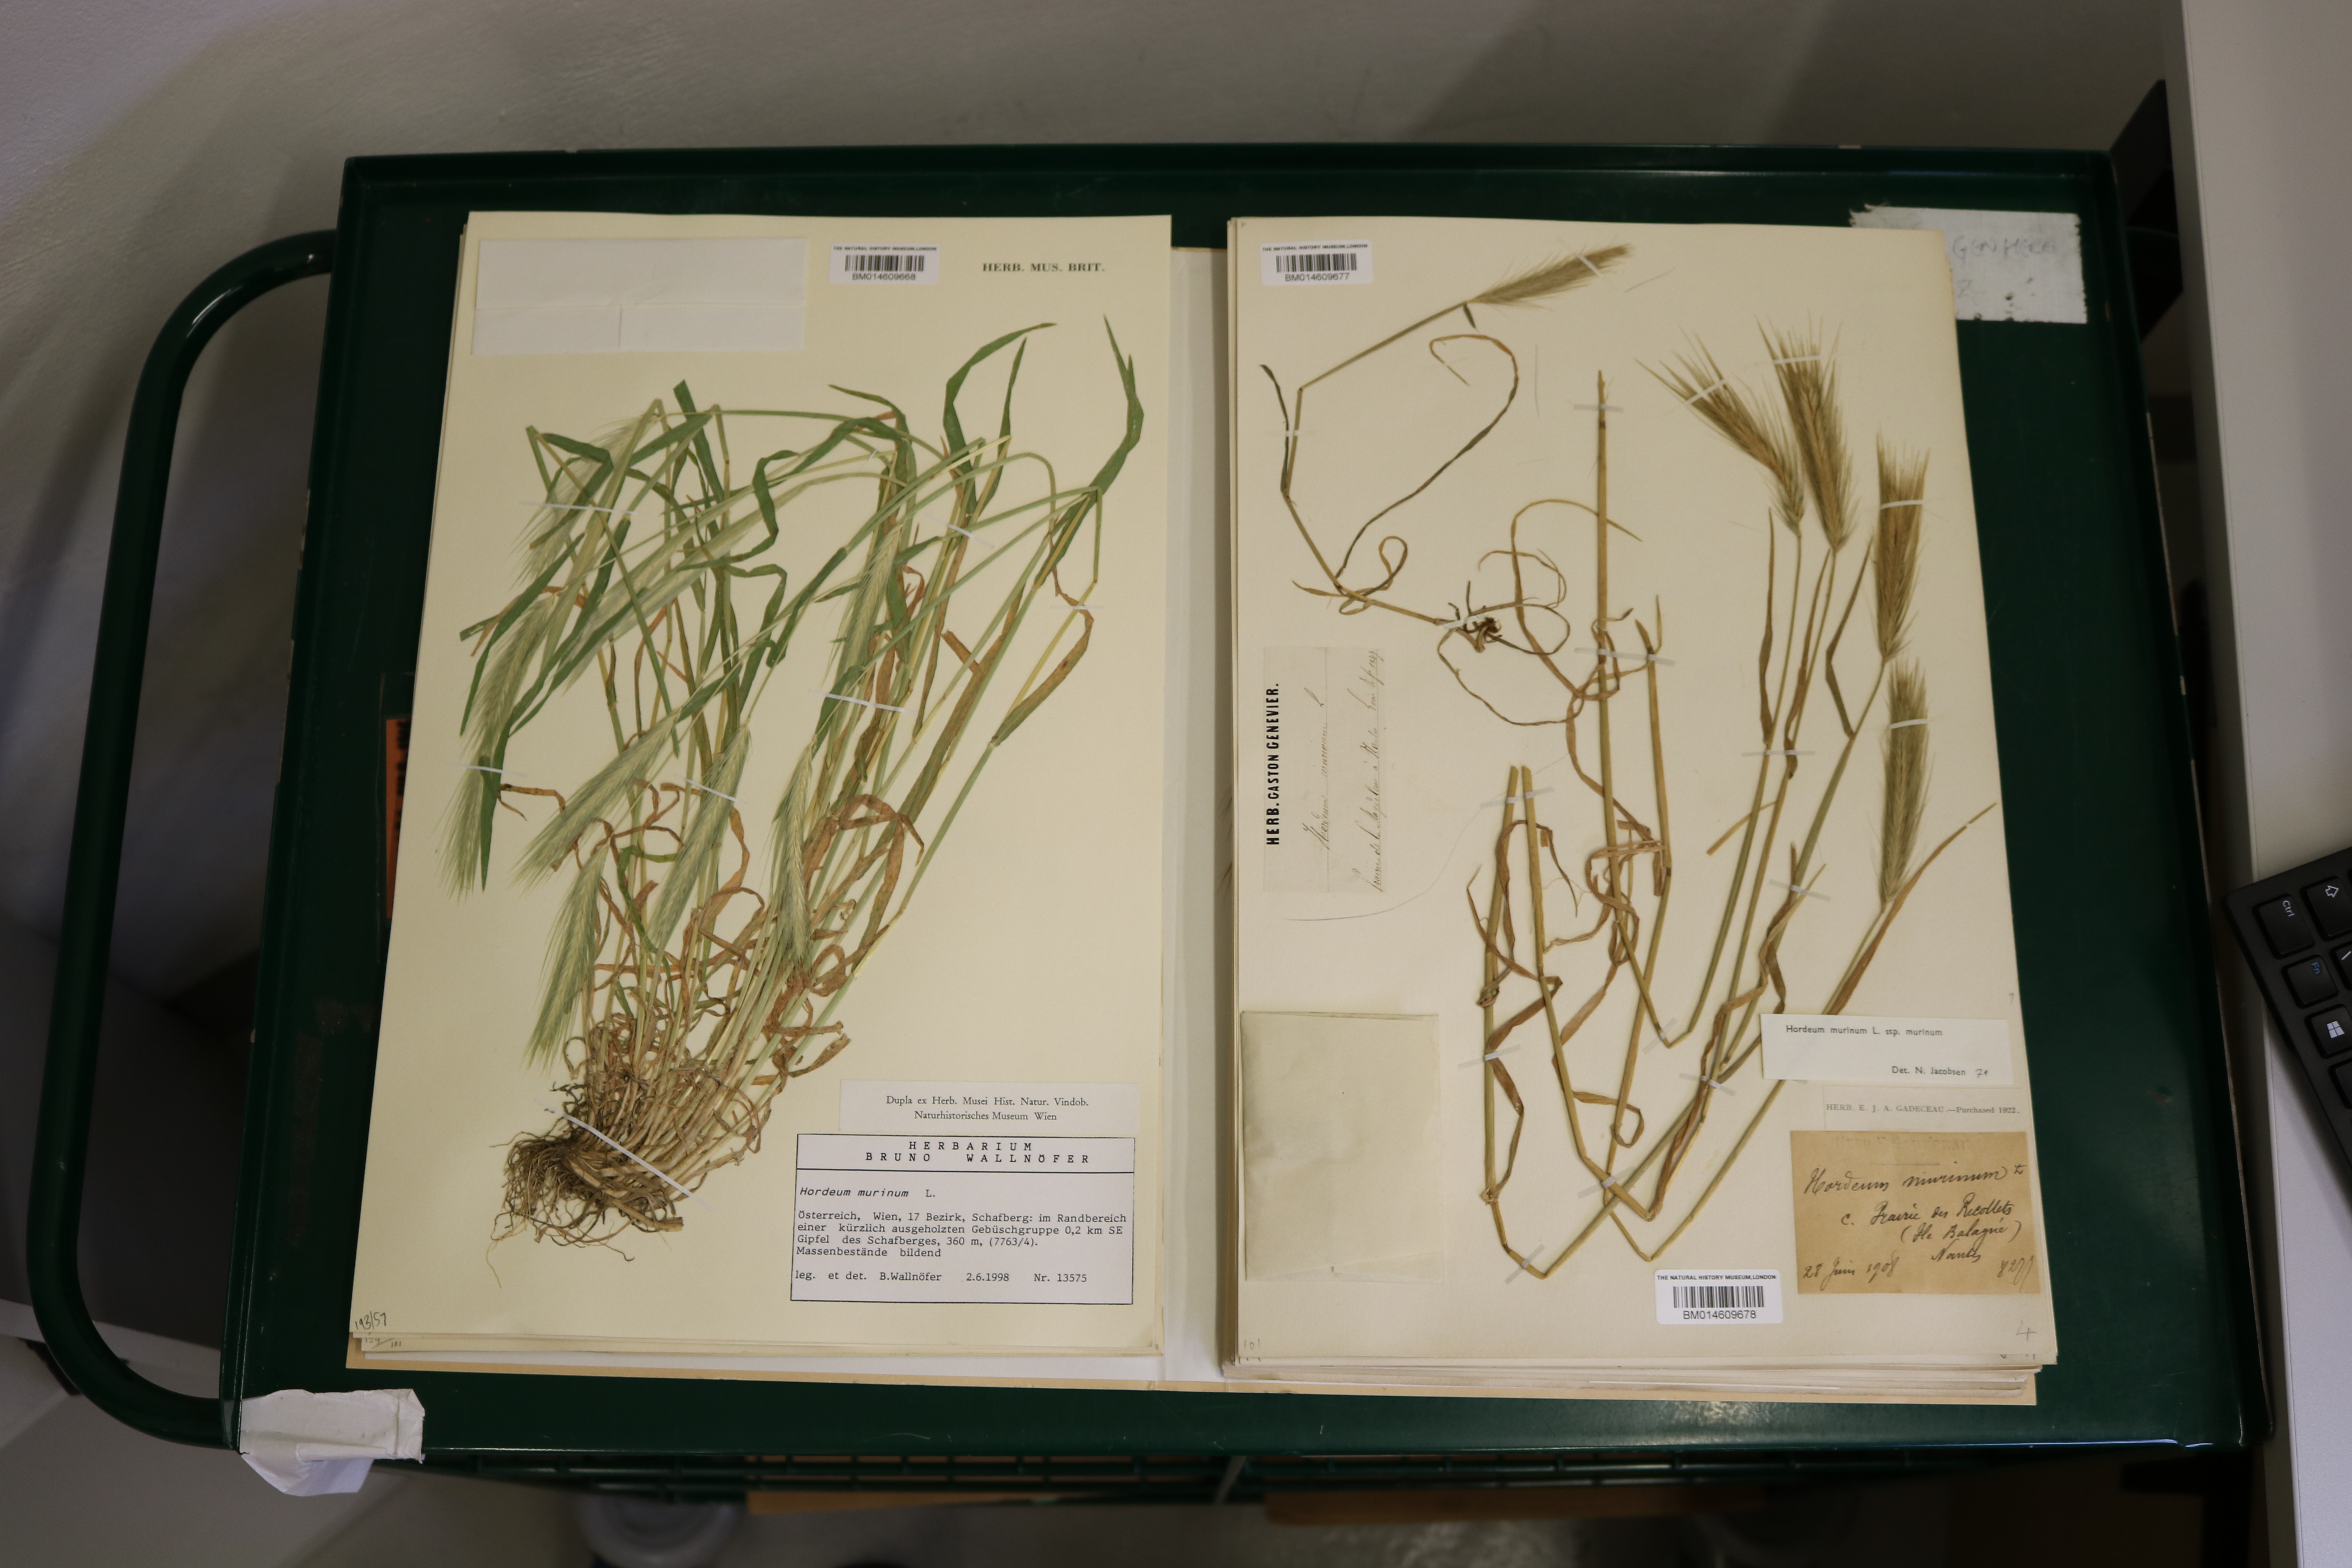 herbarium sheets showing barcodes